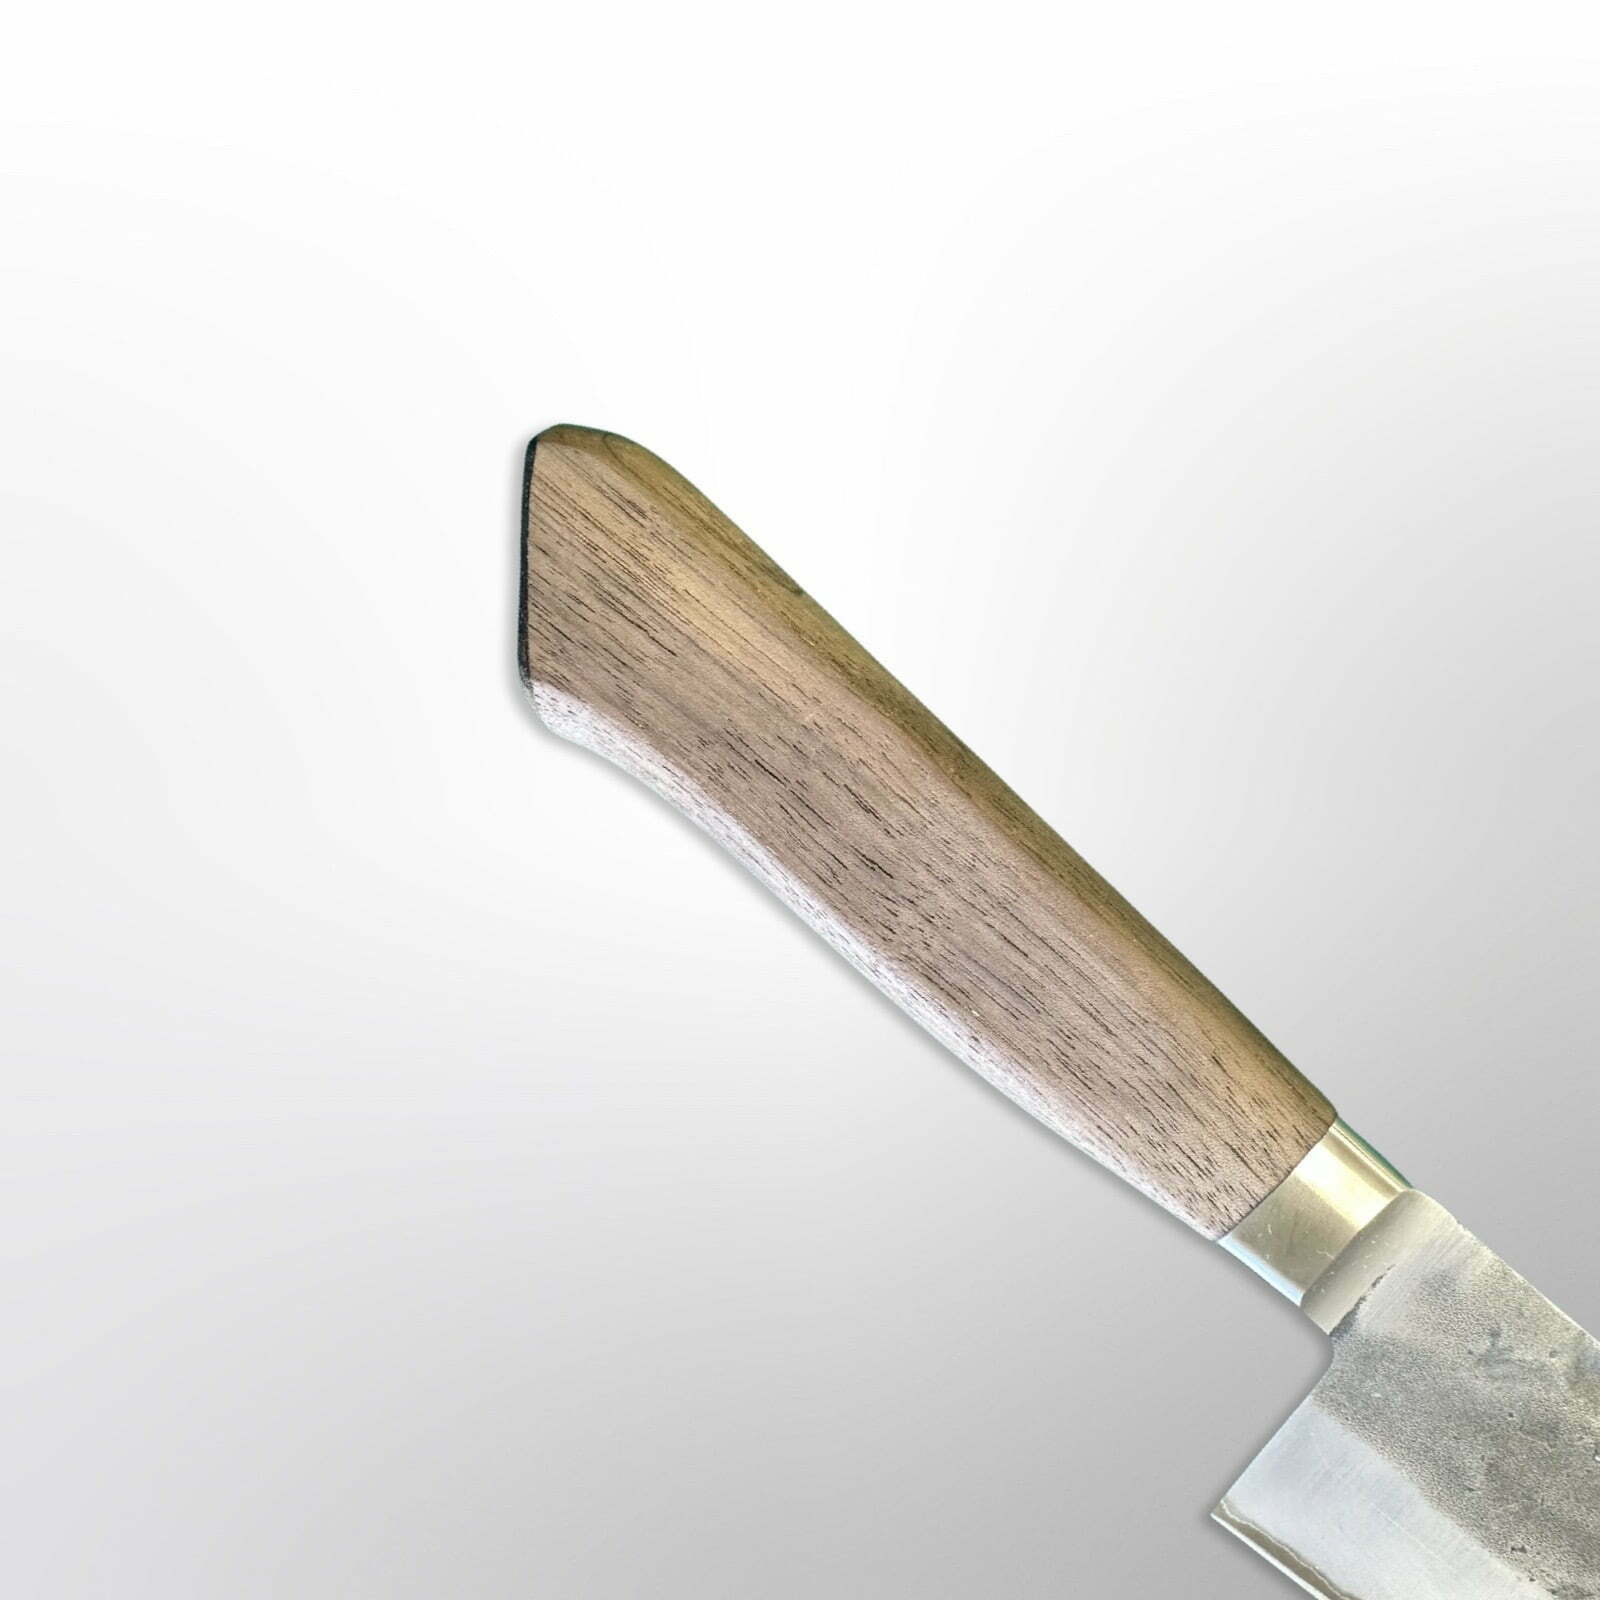  סכין שף רב-תכליתית גיוטו 210מ״מ מחוזקת 3 שכבות: פלדת פחמן יפנית אוגמי2 עטופה פלדת אל-חלד גימור נשיג׳י טדאפוסה יפן